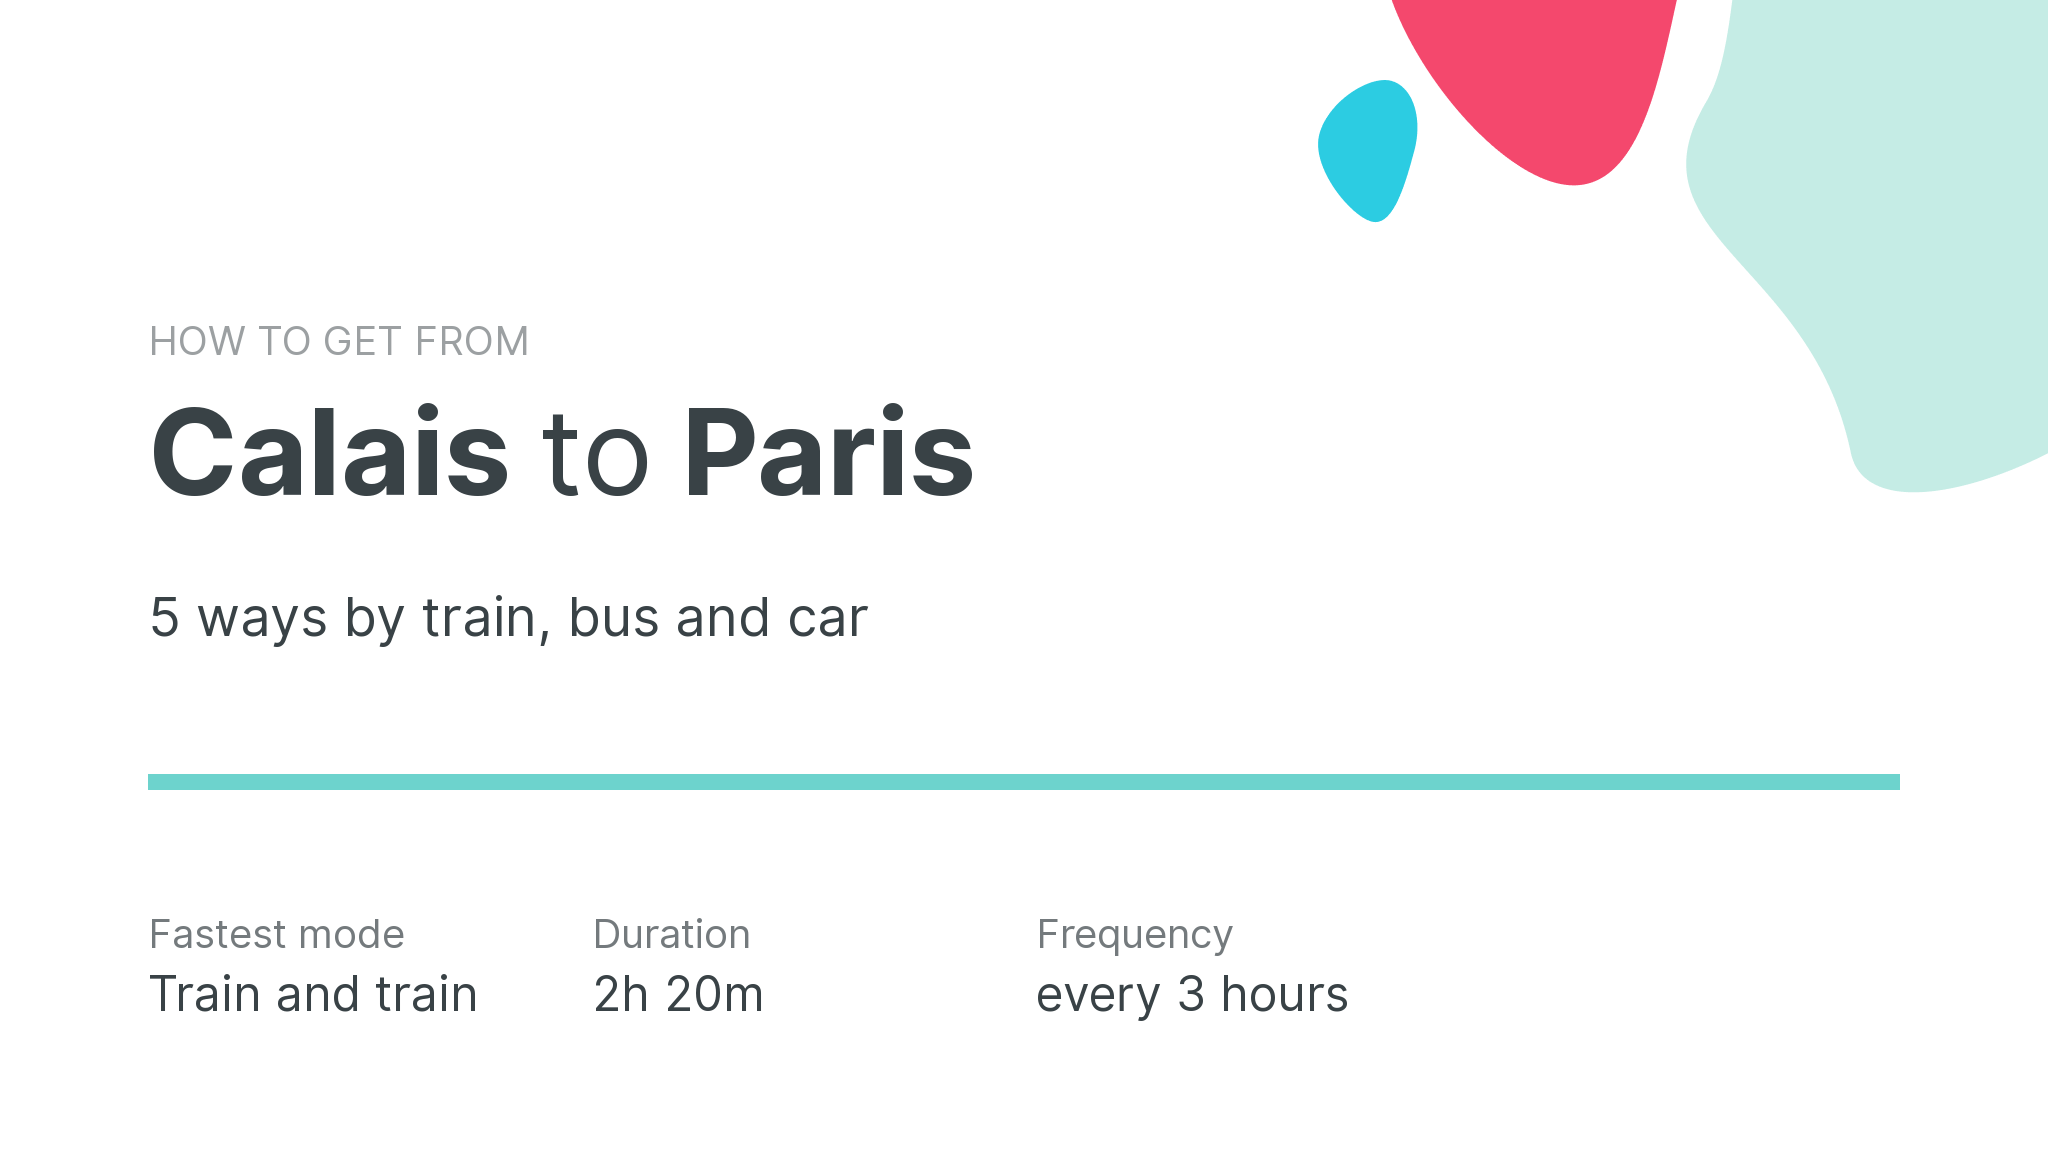 How do I get from Calais to Paris